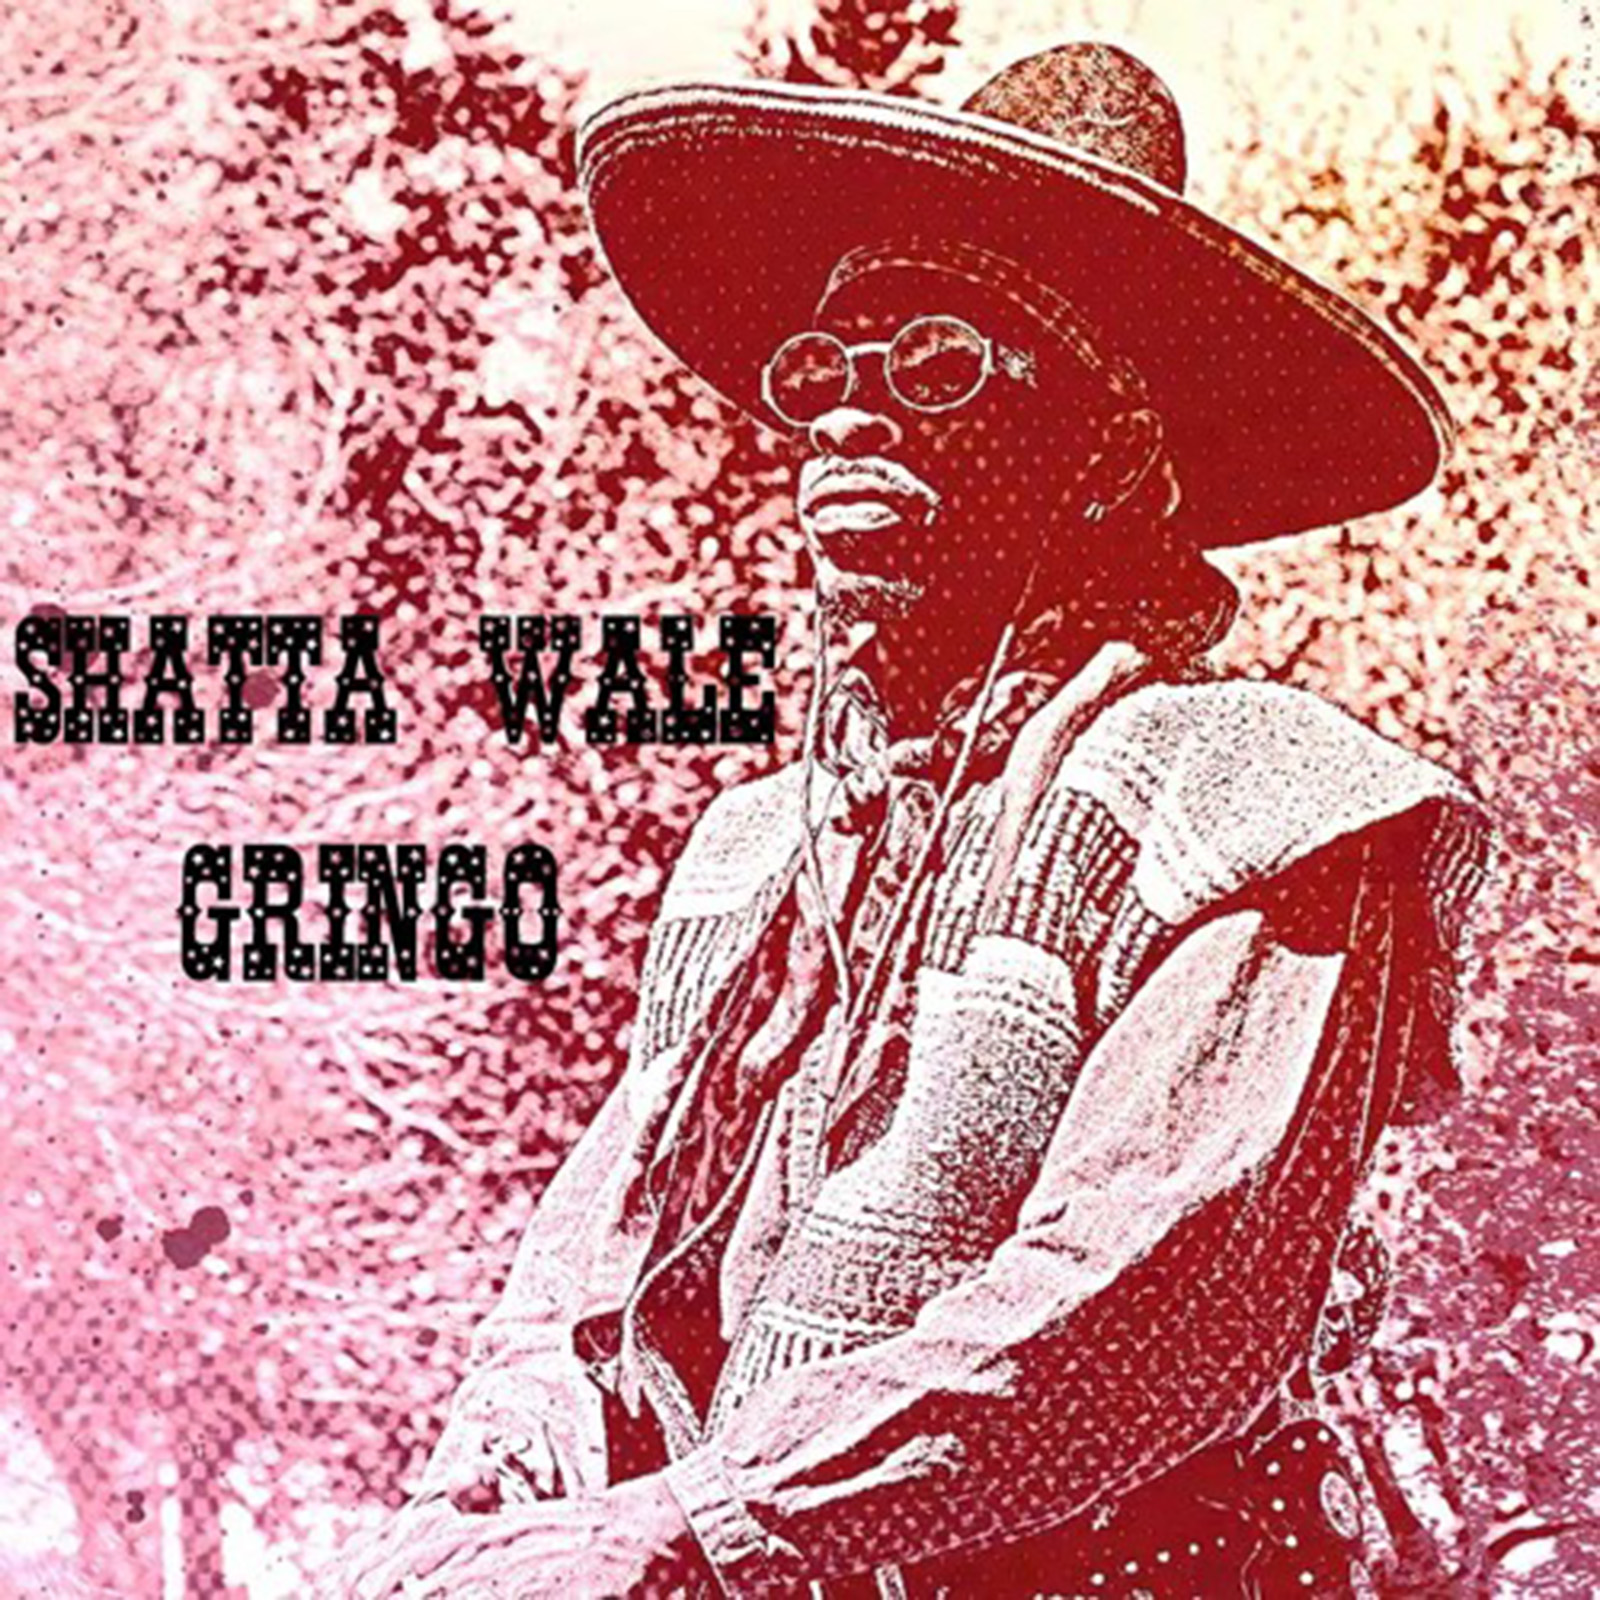 Gringo by Shatta Wale